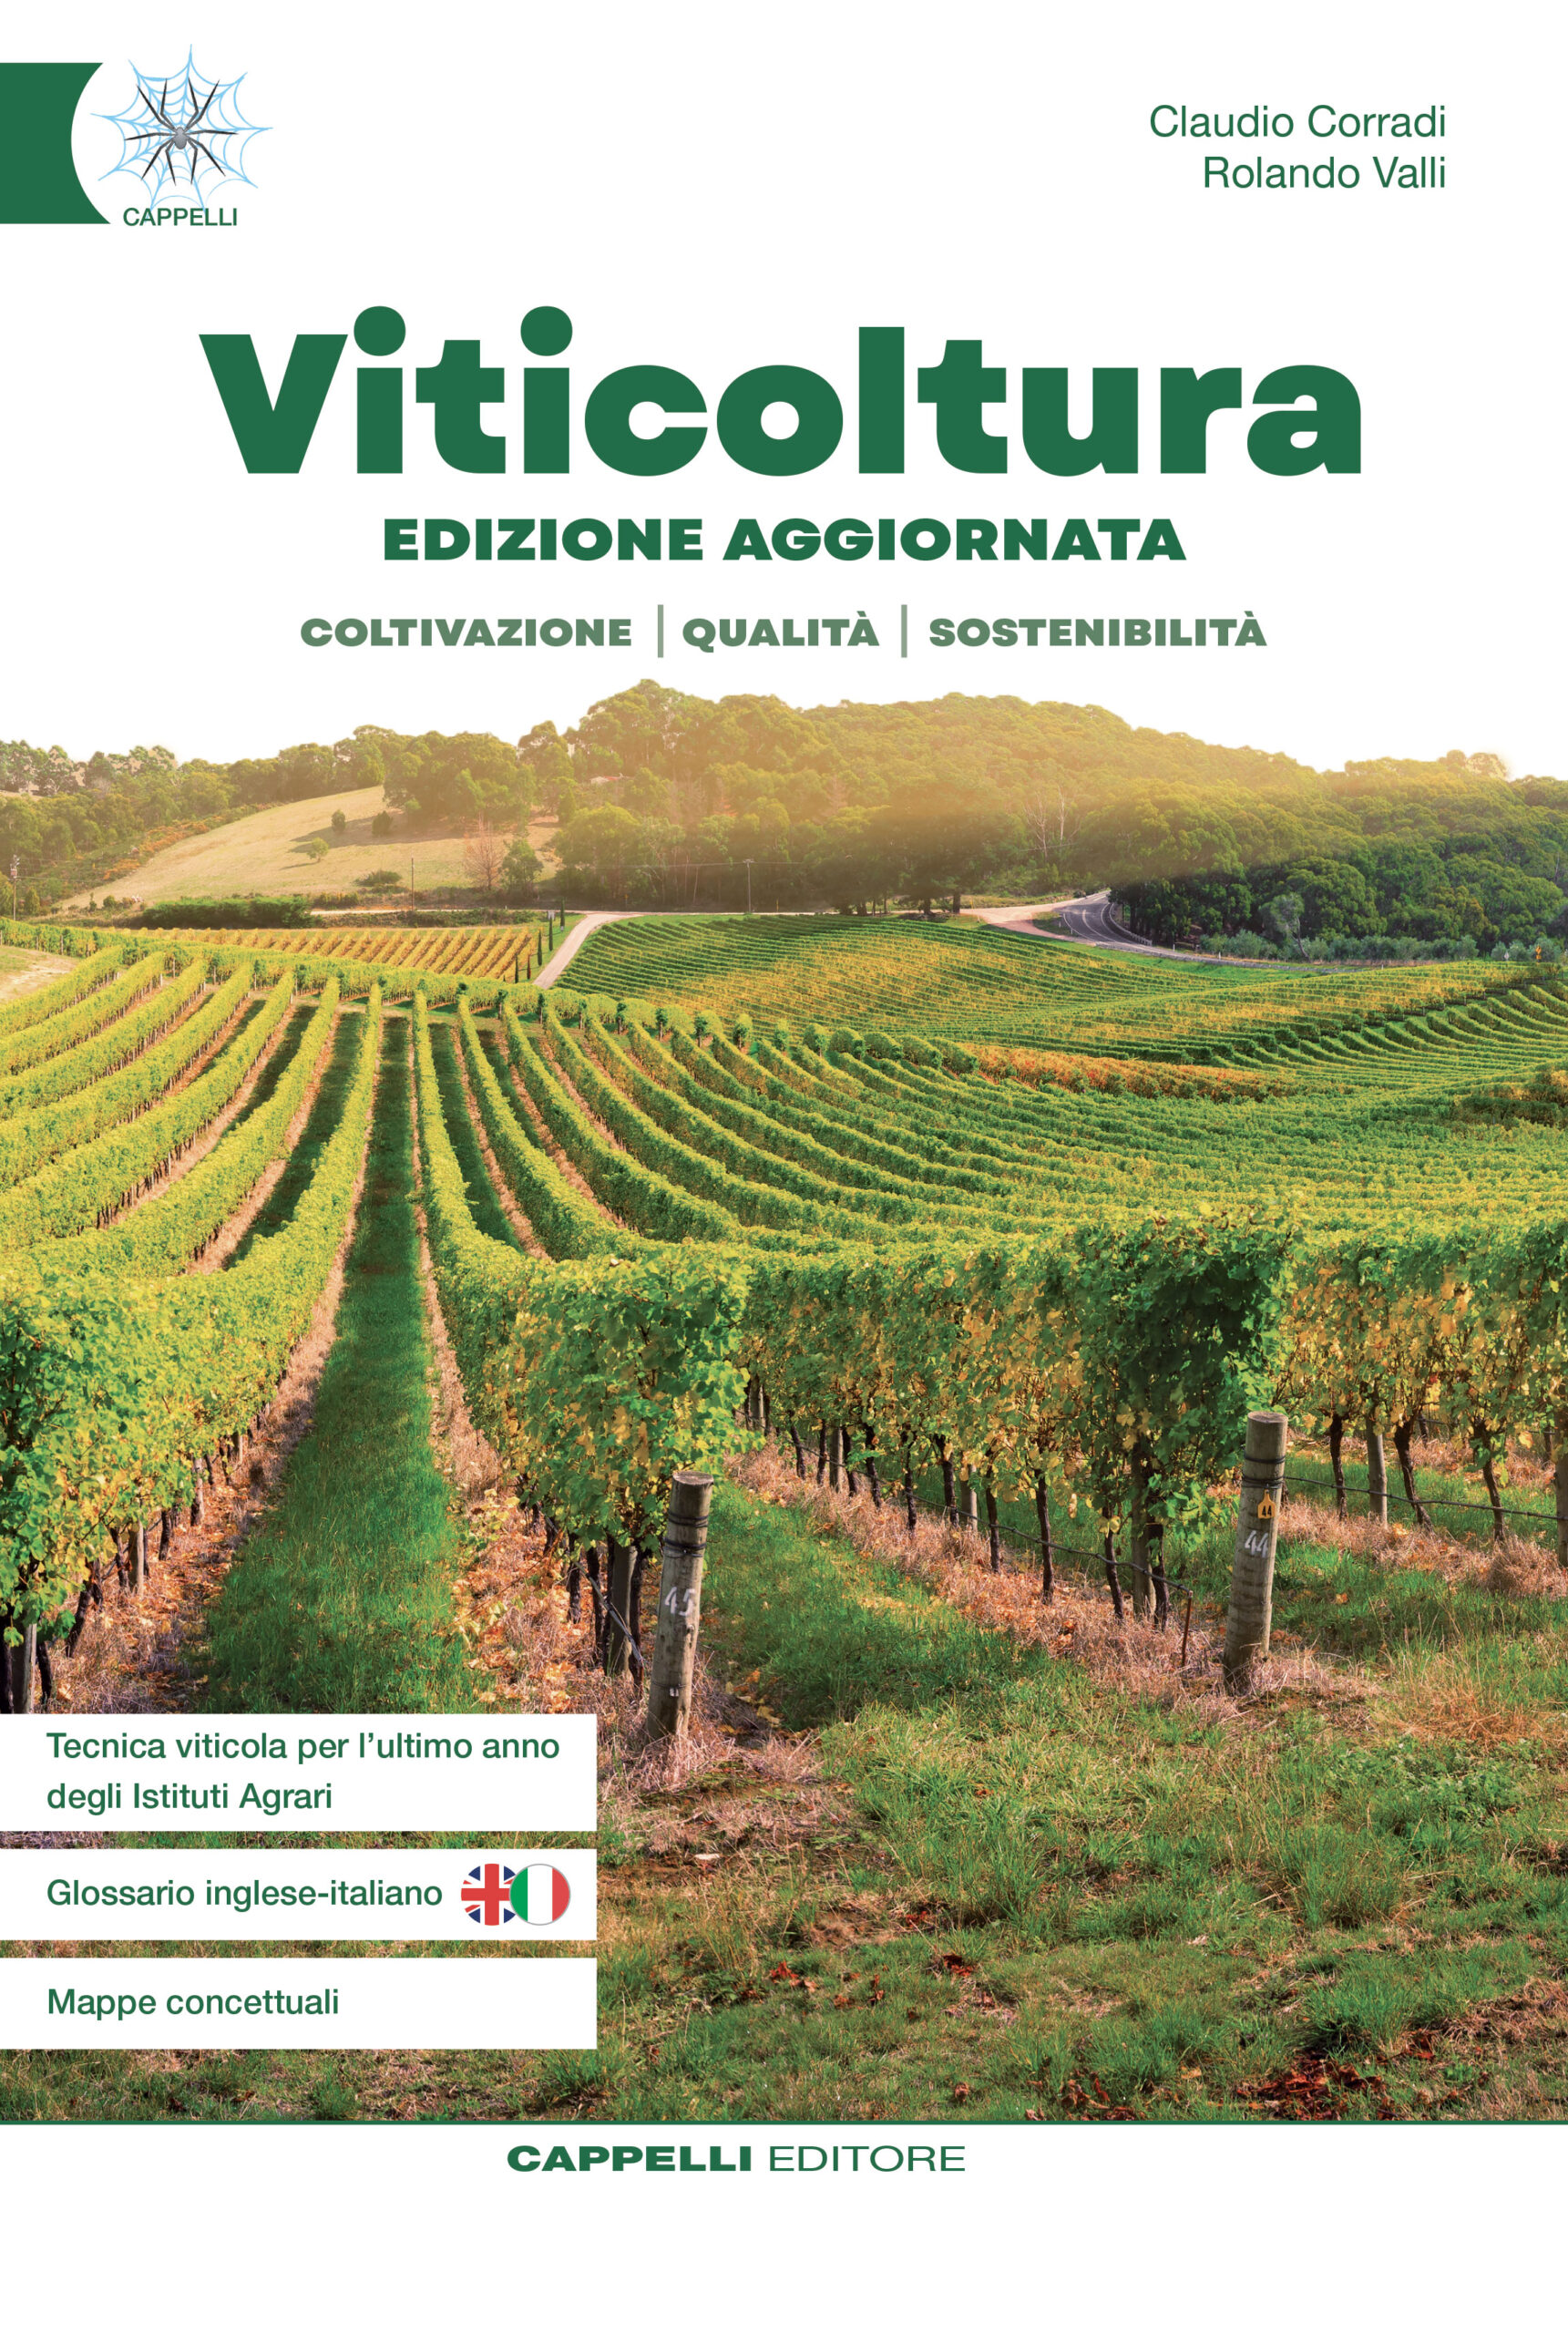 Viticoltura (Edizione aggiornata)